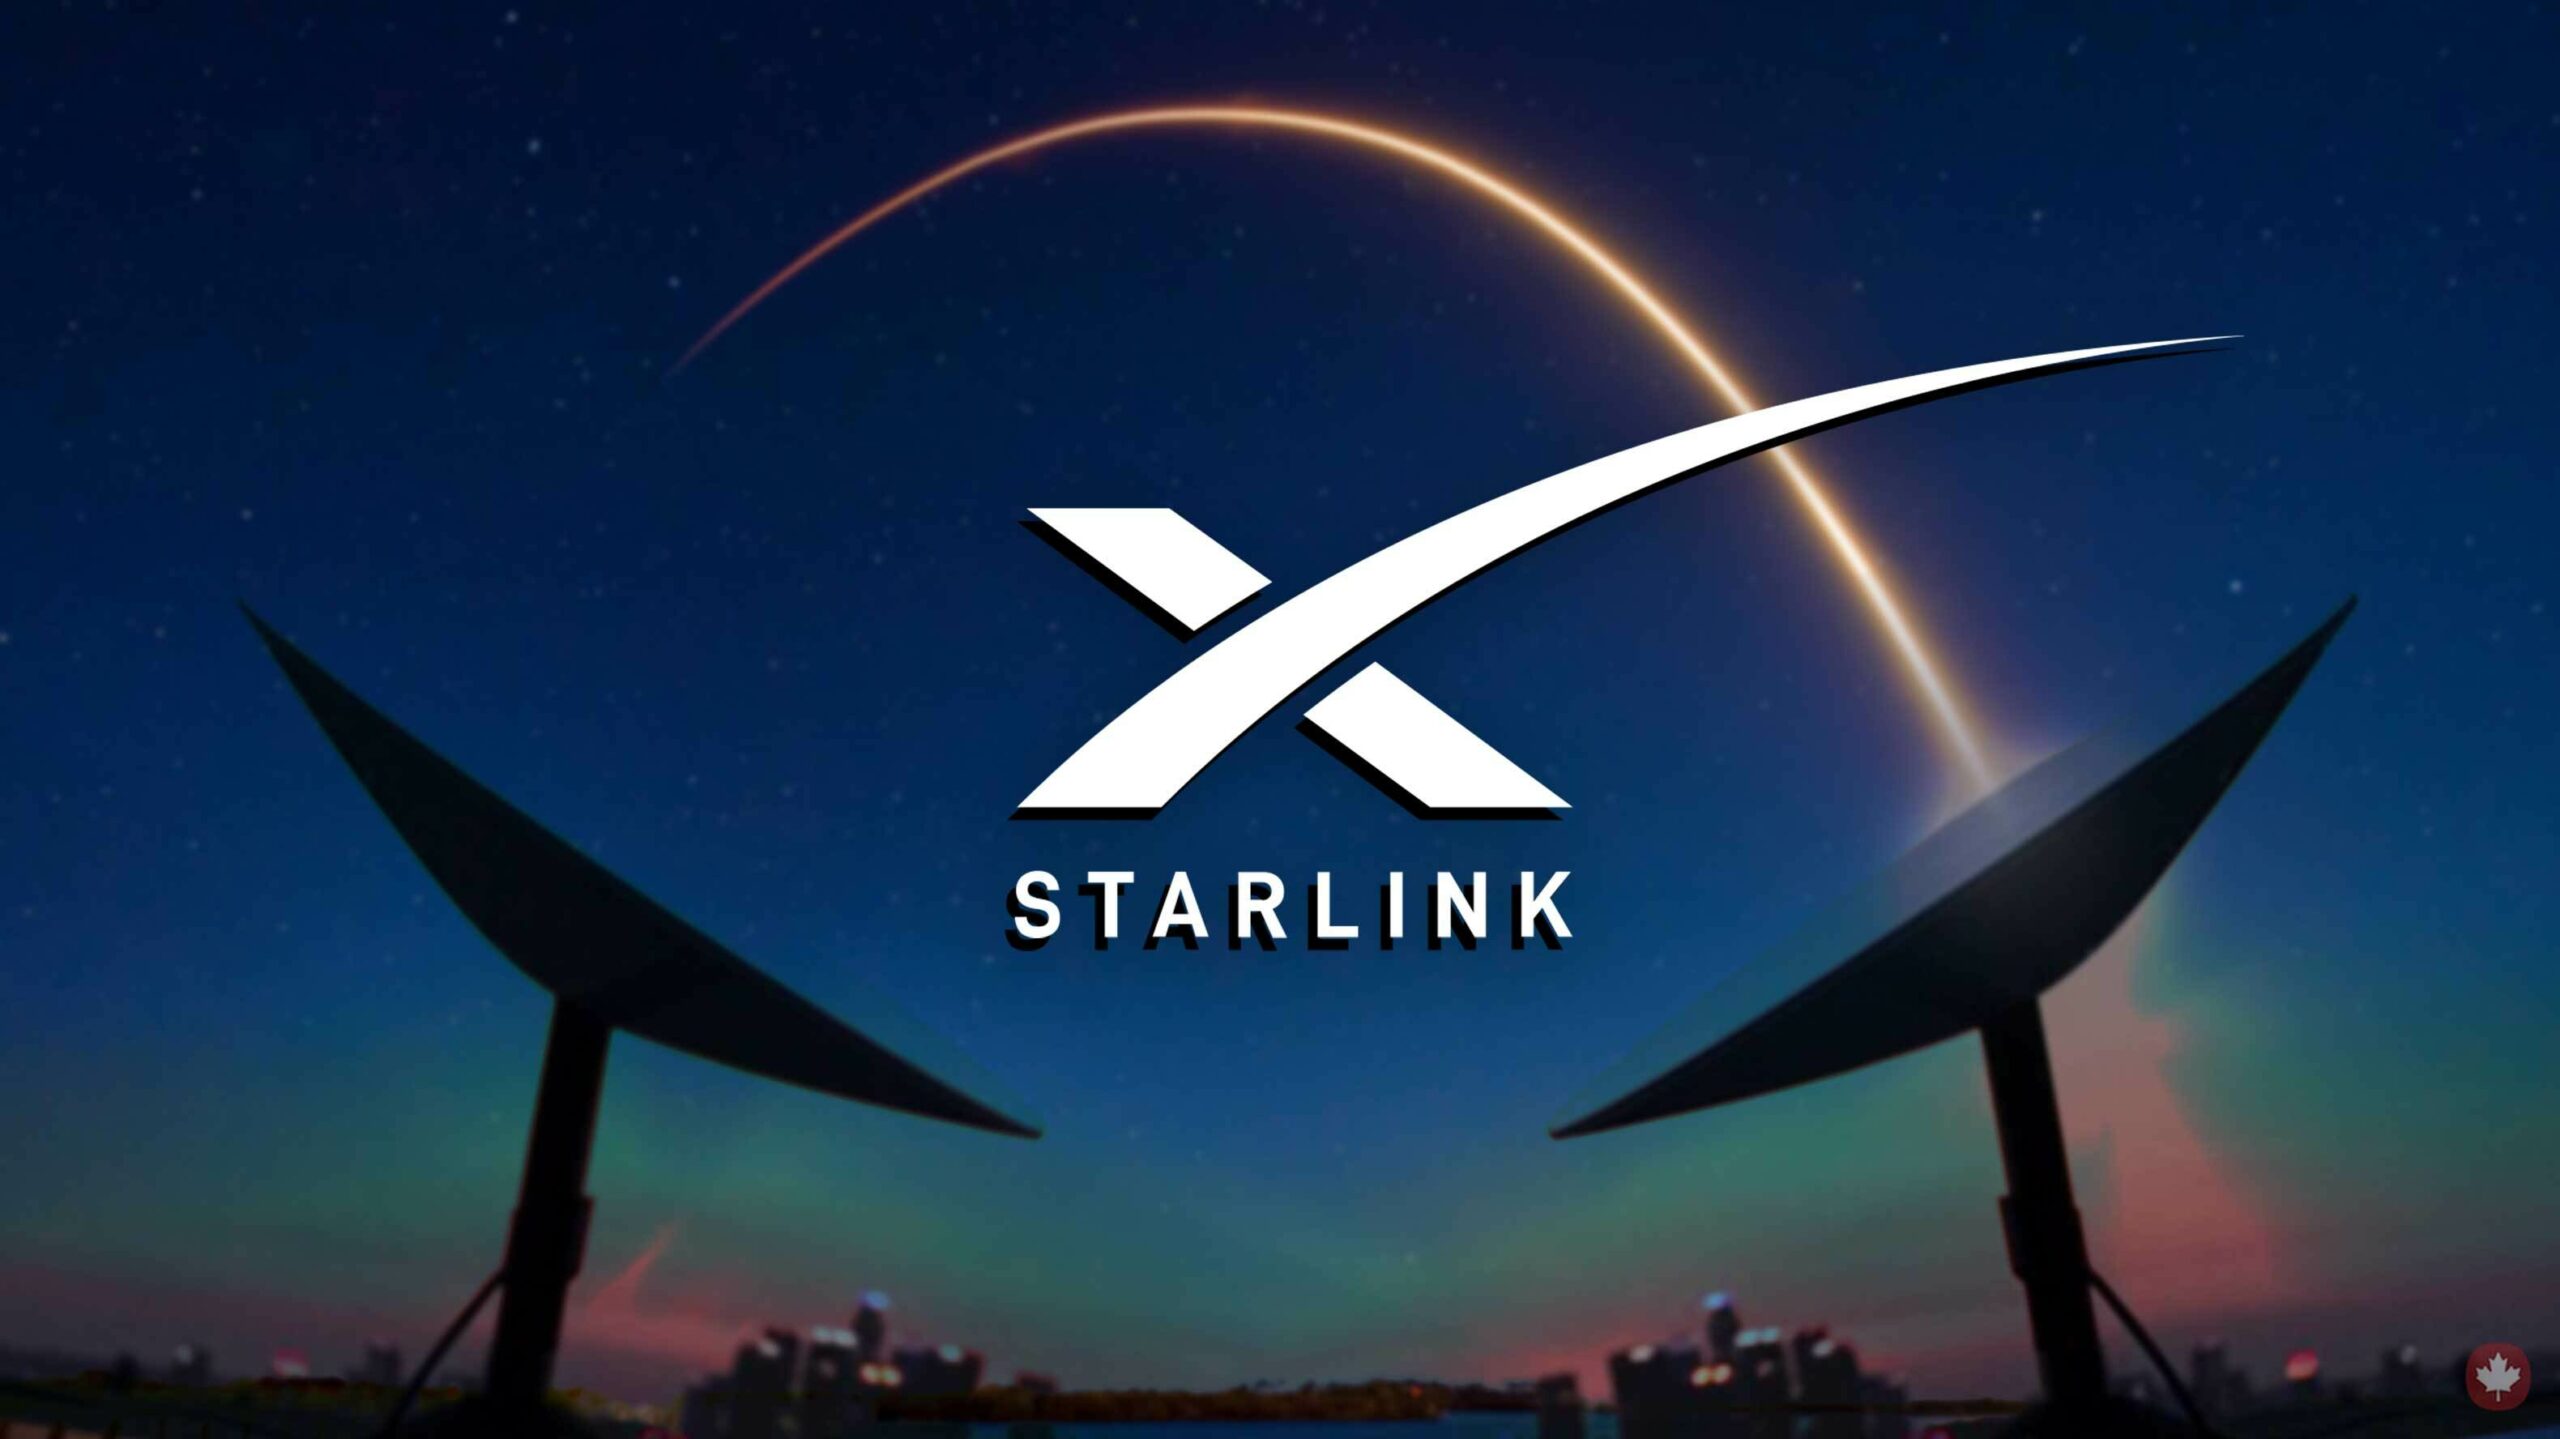 ดาวเทียม Starlink: อนาคตของการเชื่อมต่ออินเทอร์เน็ต